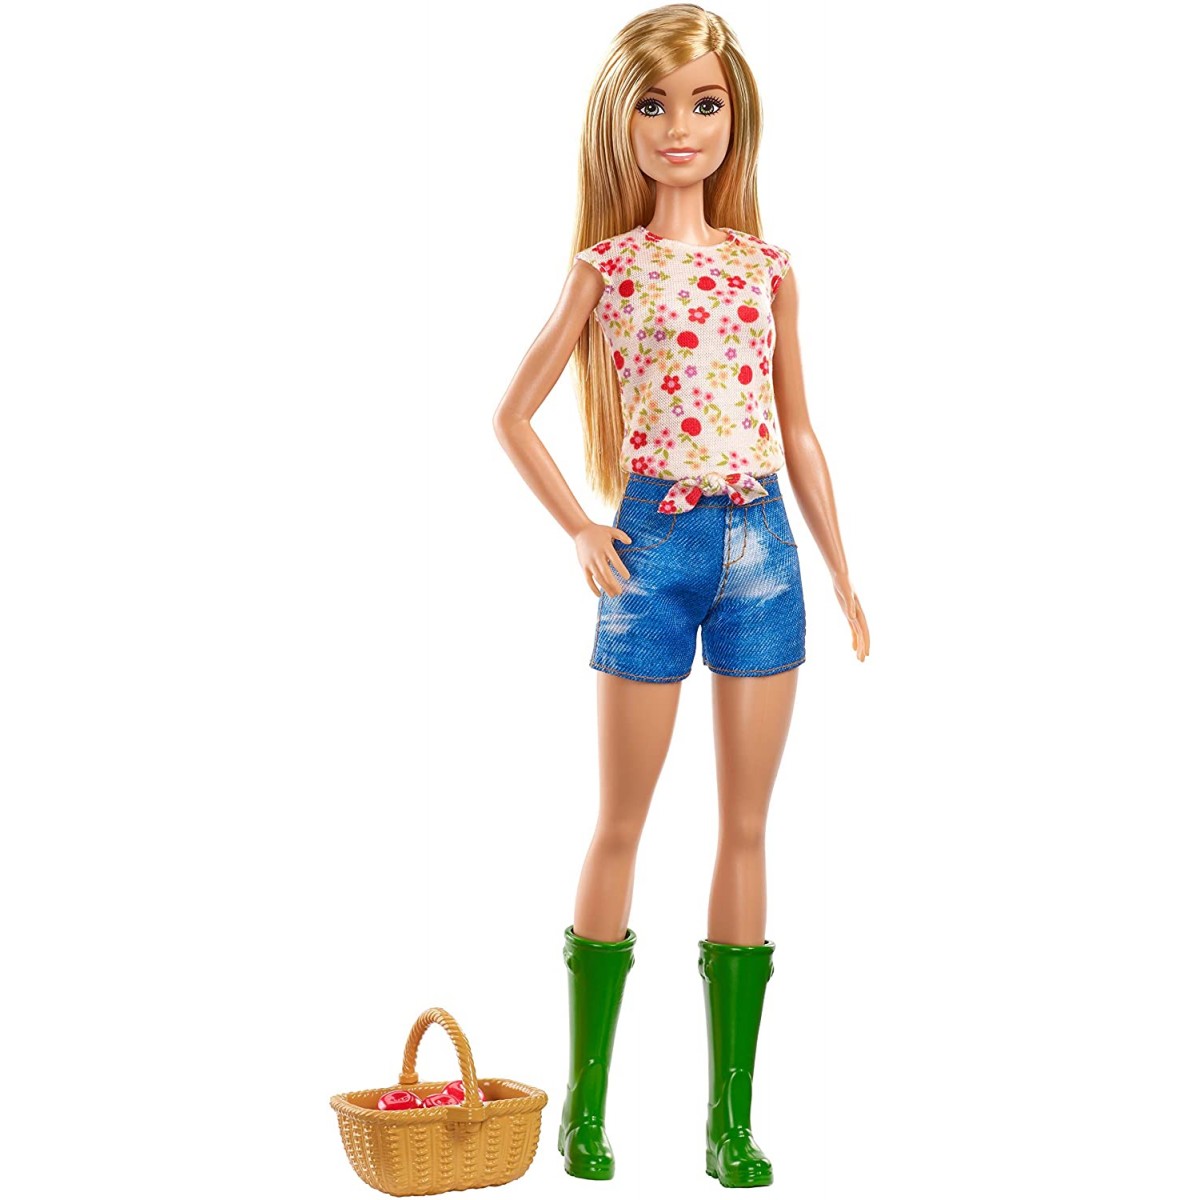 Bambola Barbie contadina con accessori - Mattel